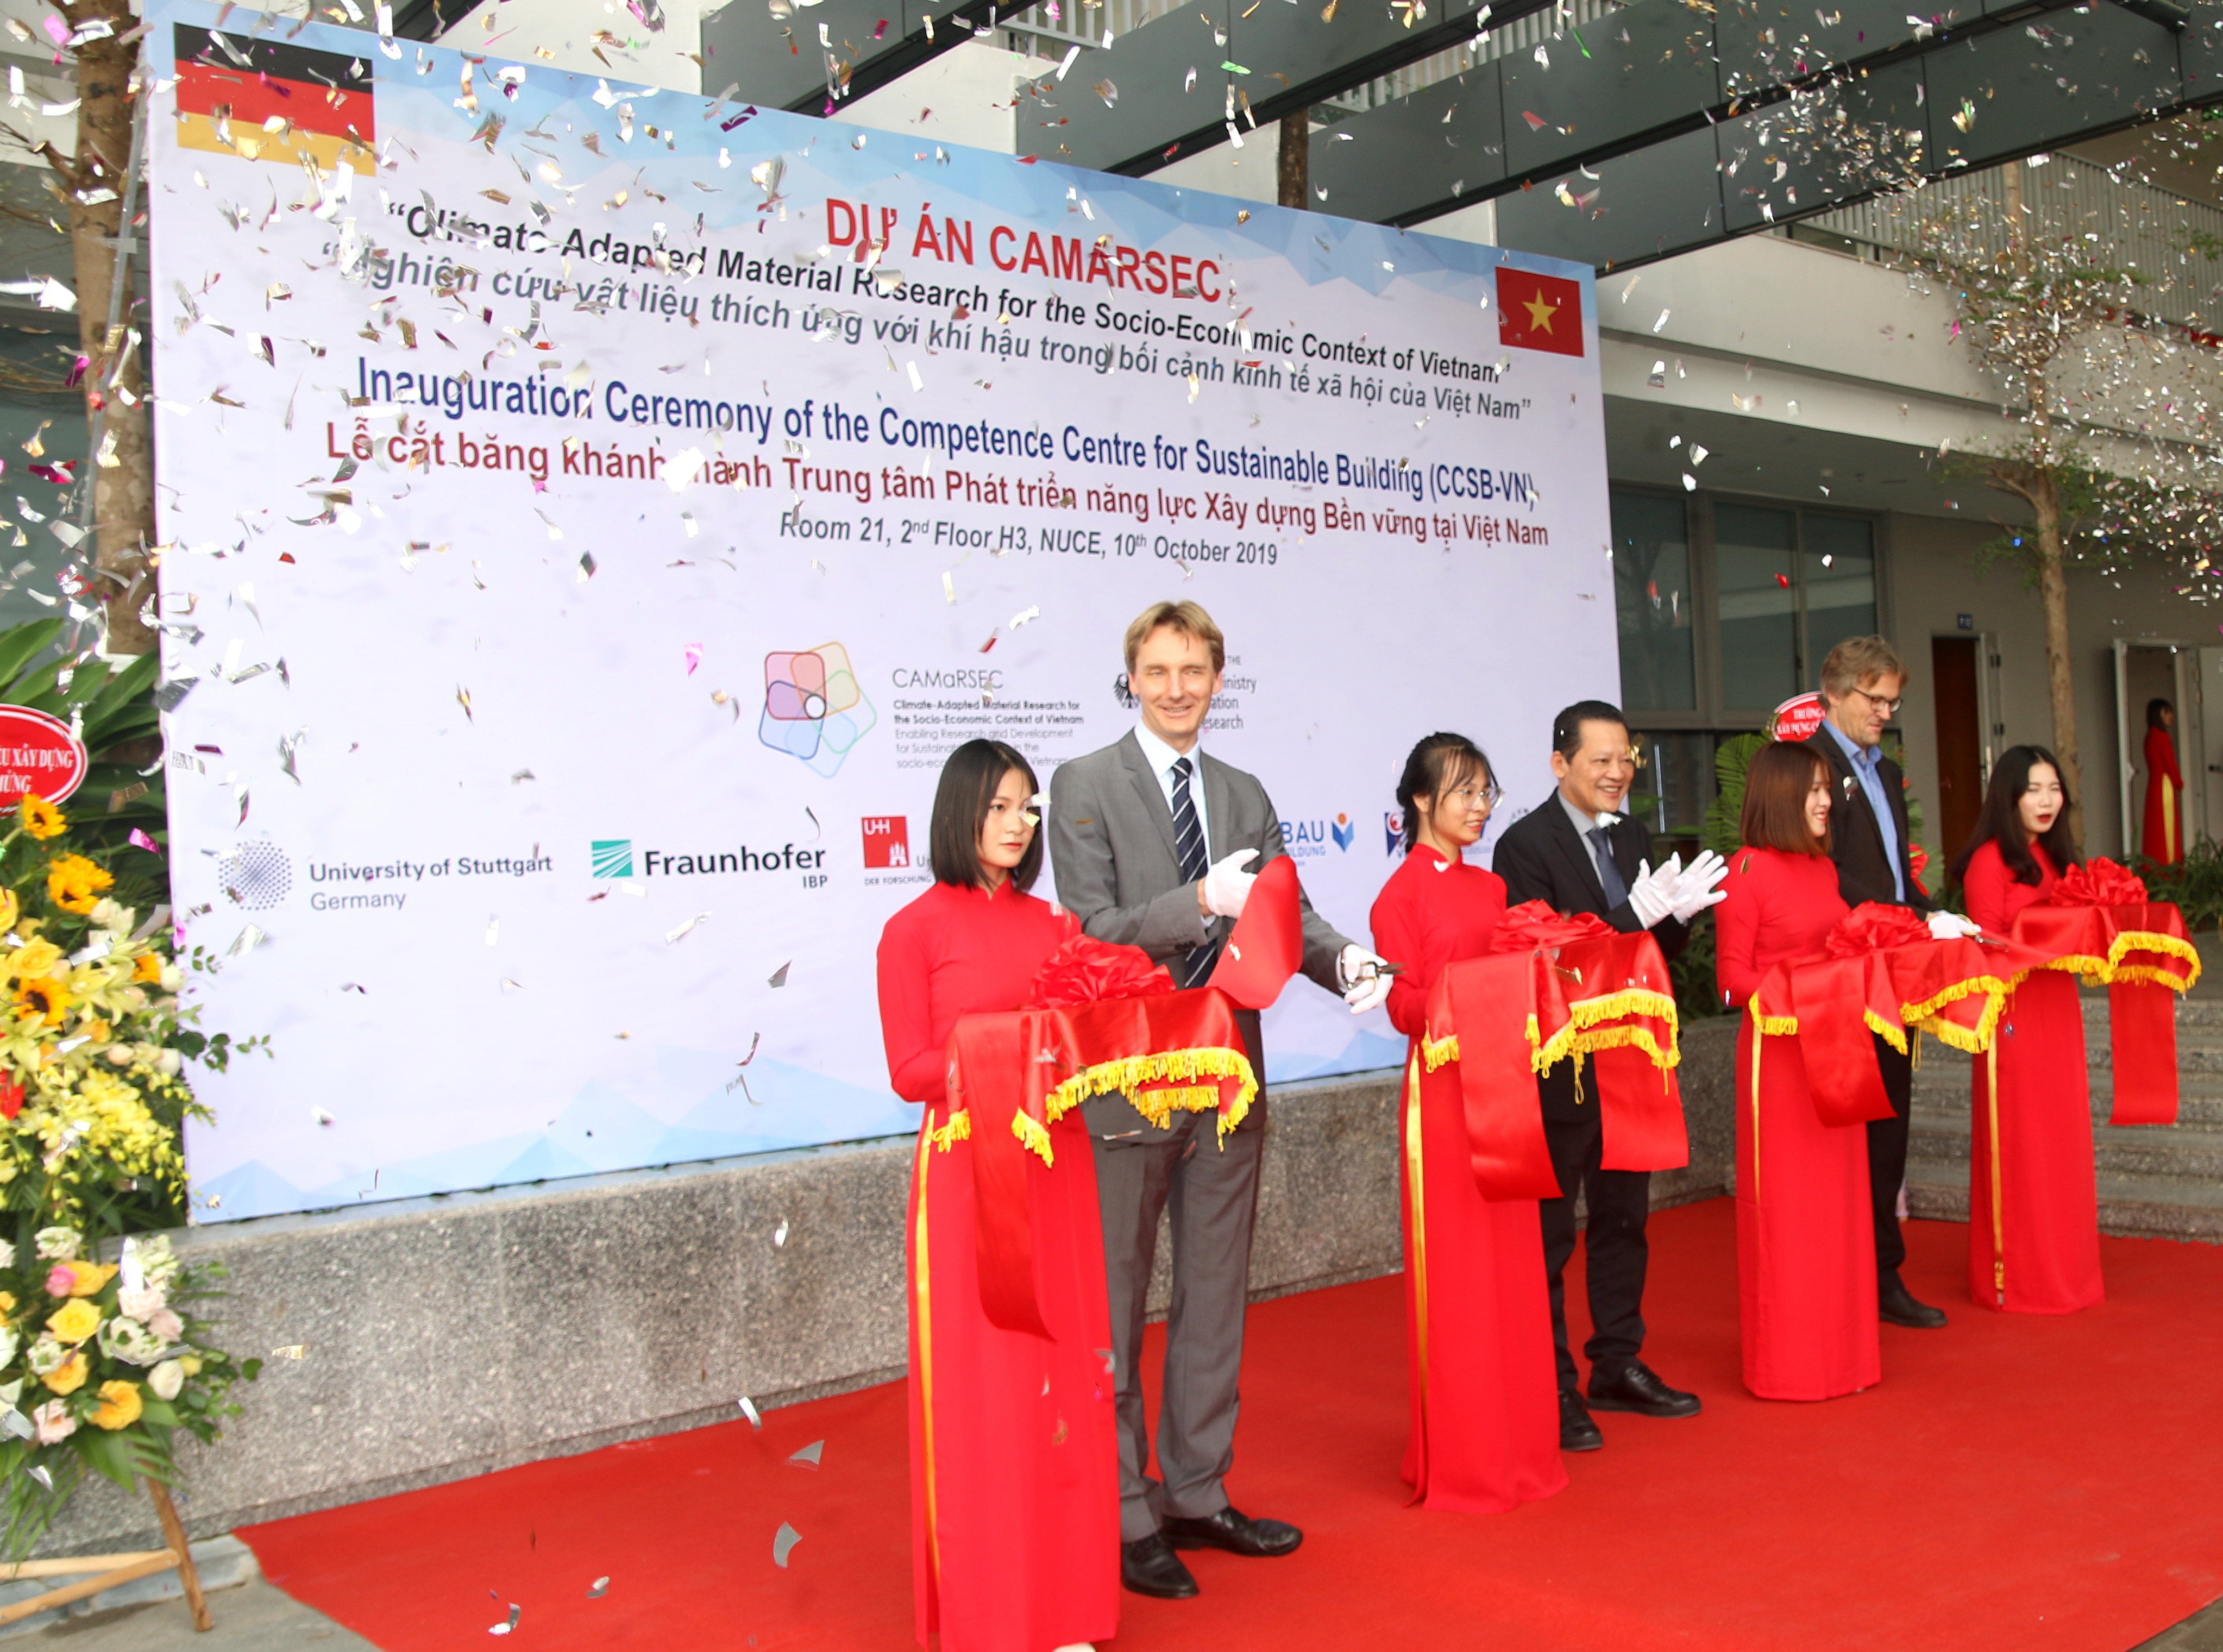 Eröffnung des CAMaRSEC Projektbüros und des Competence Centre for Sustainable Building in Vietnam